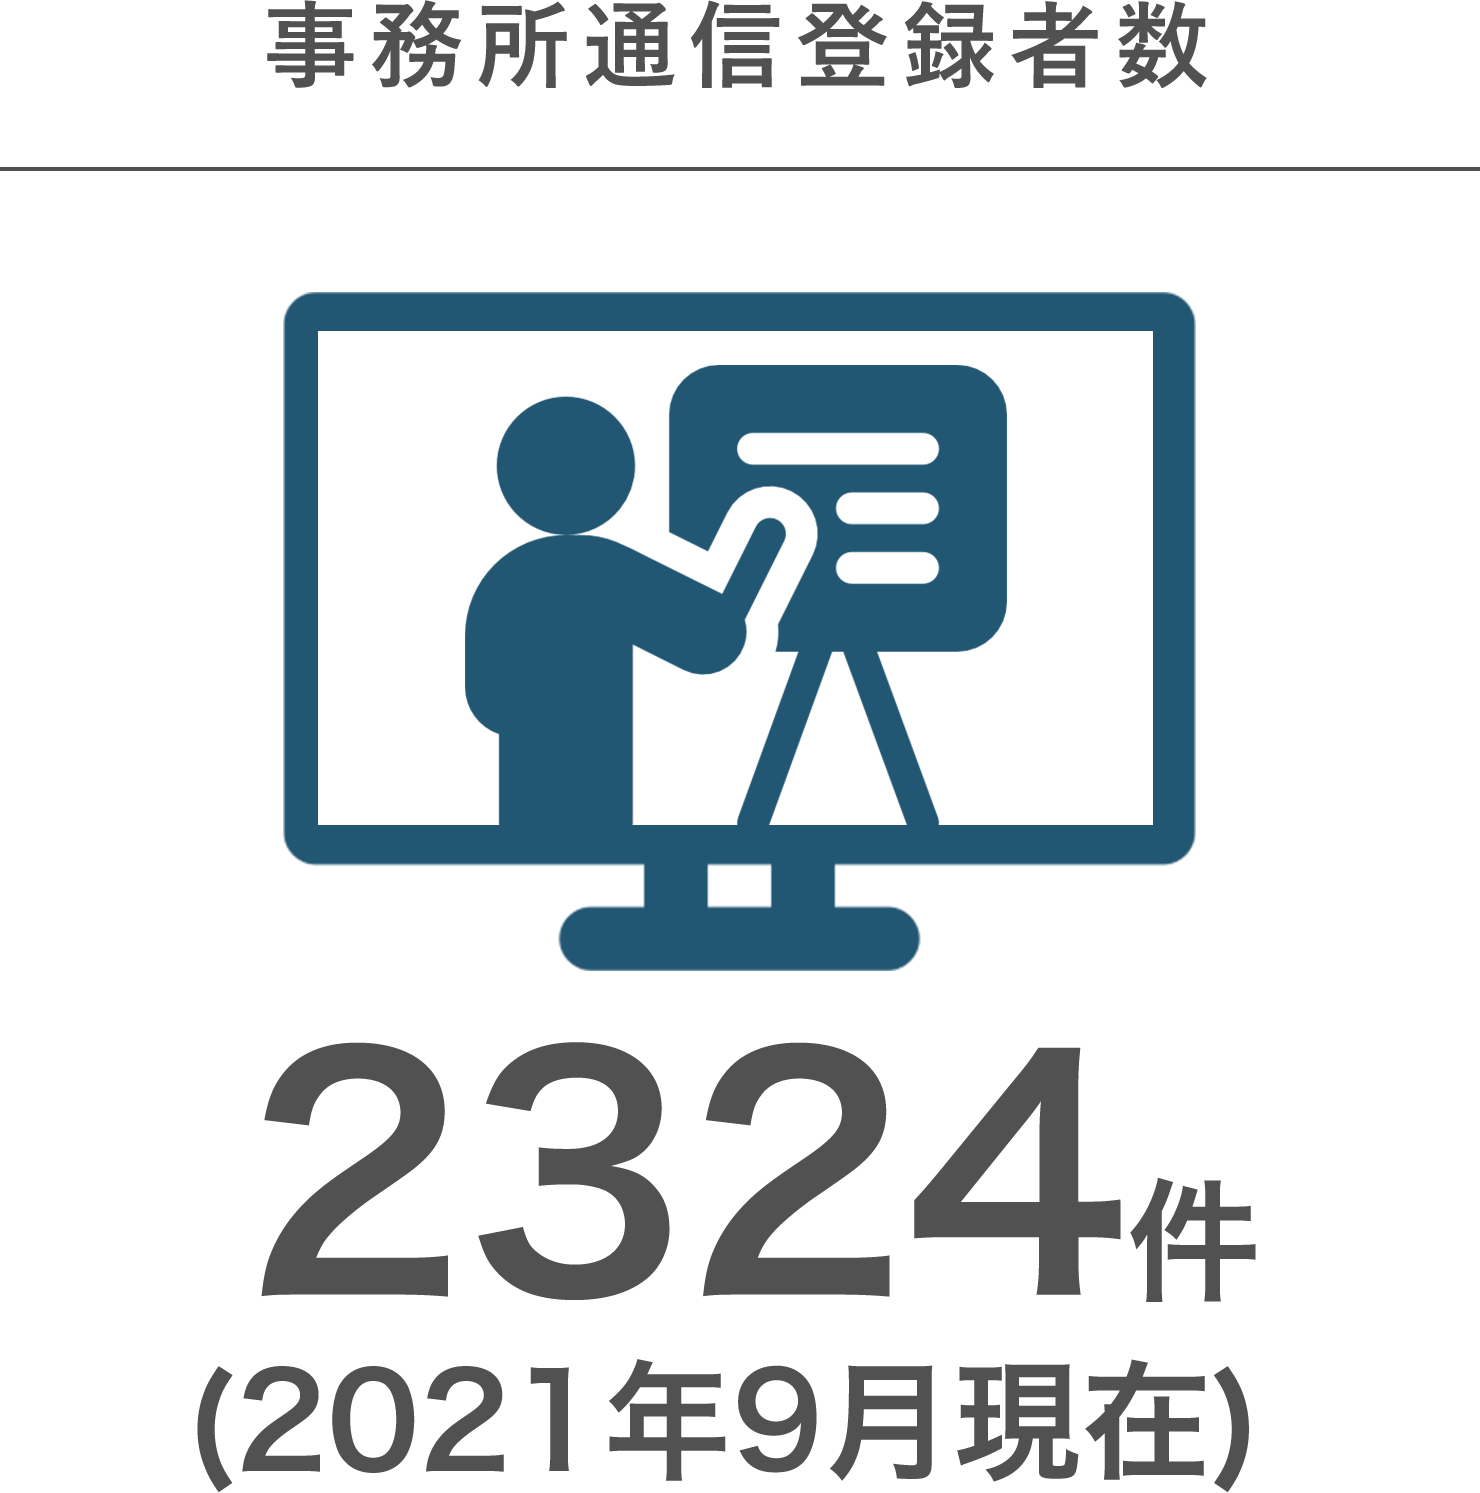 事務所通信登録者数　2,324件(2021年9月現在)